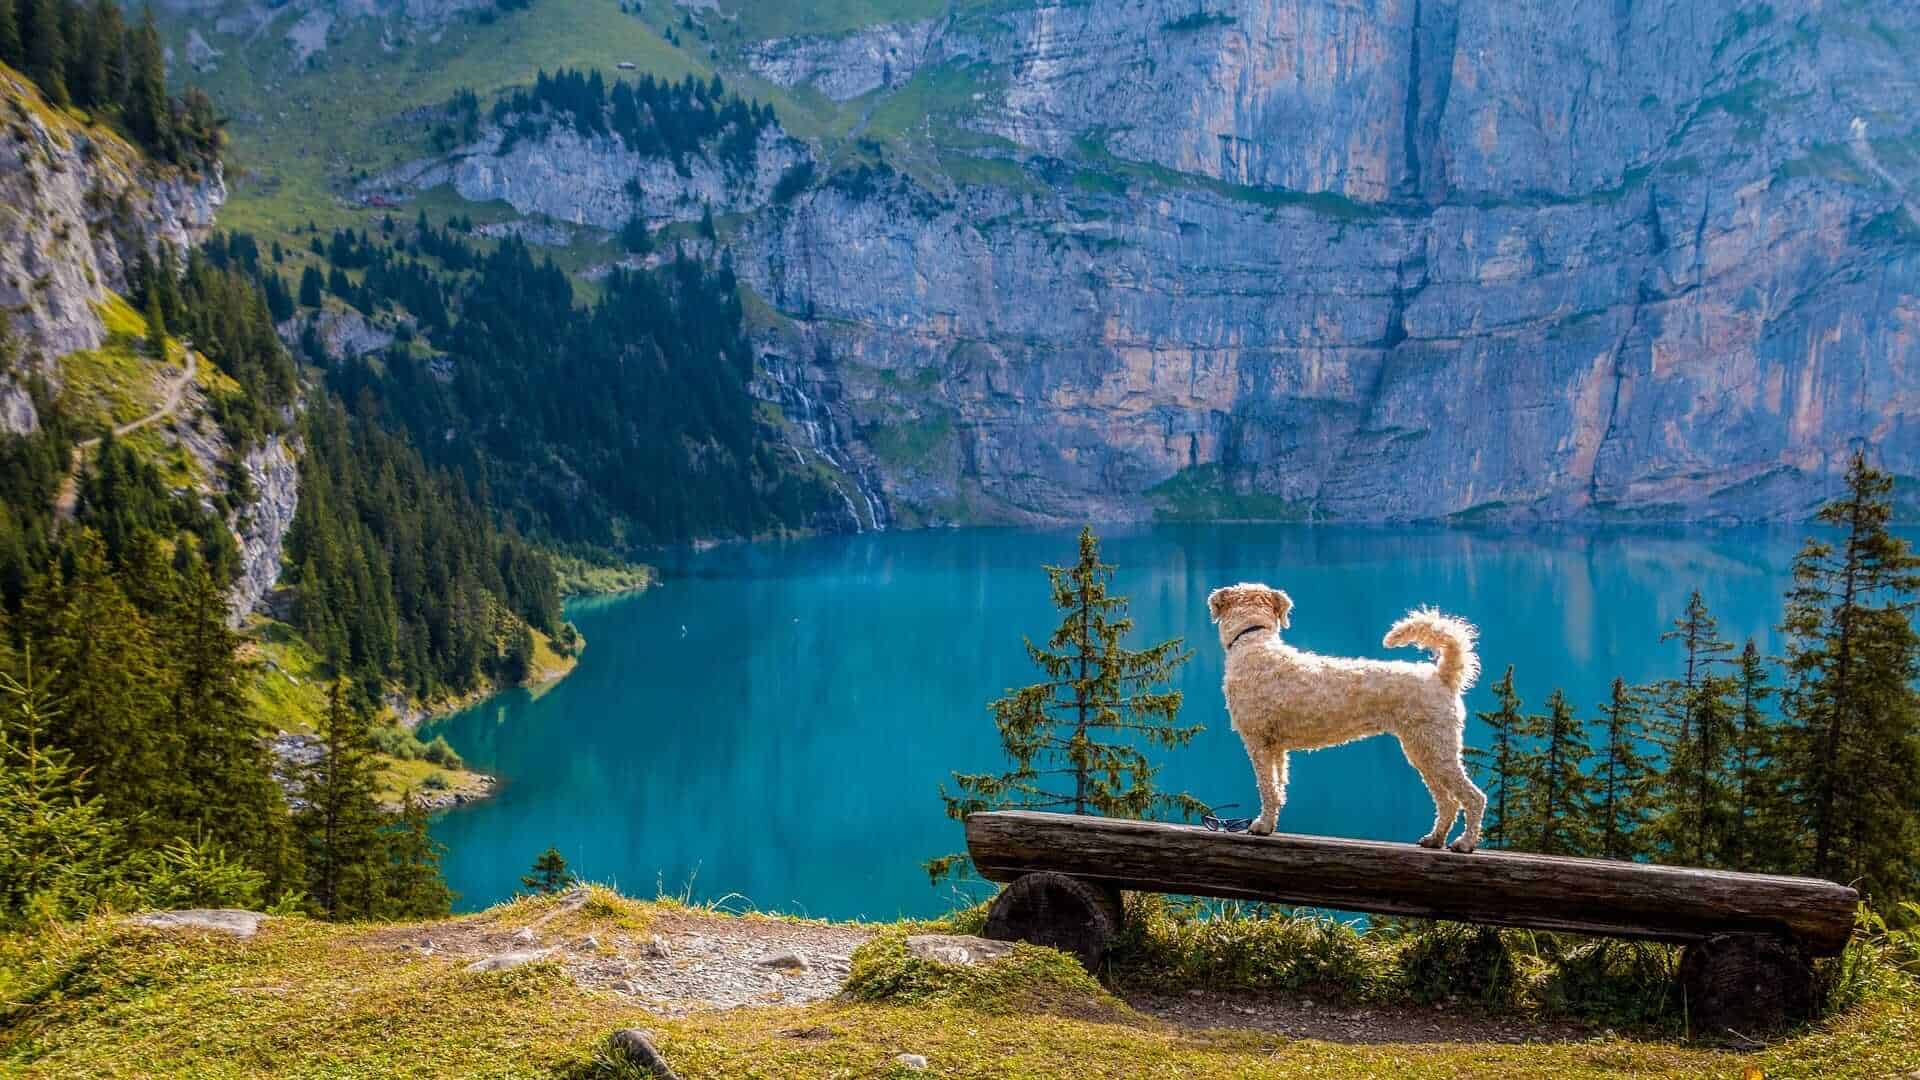 Bergsee Lake, Switzerland